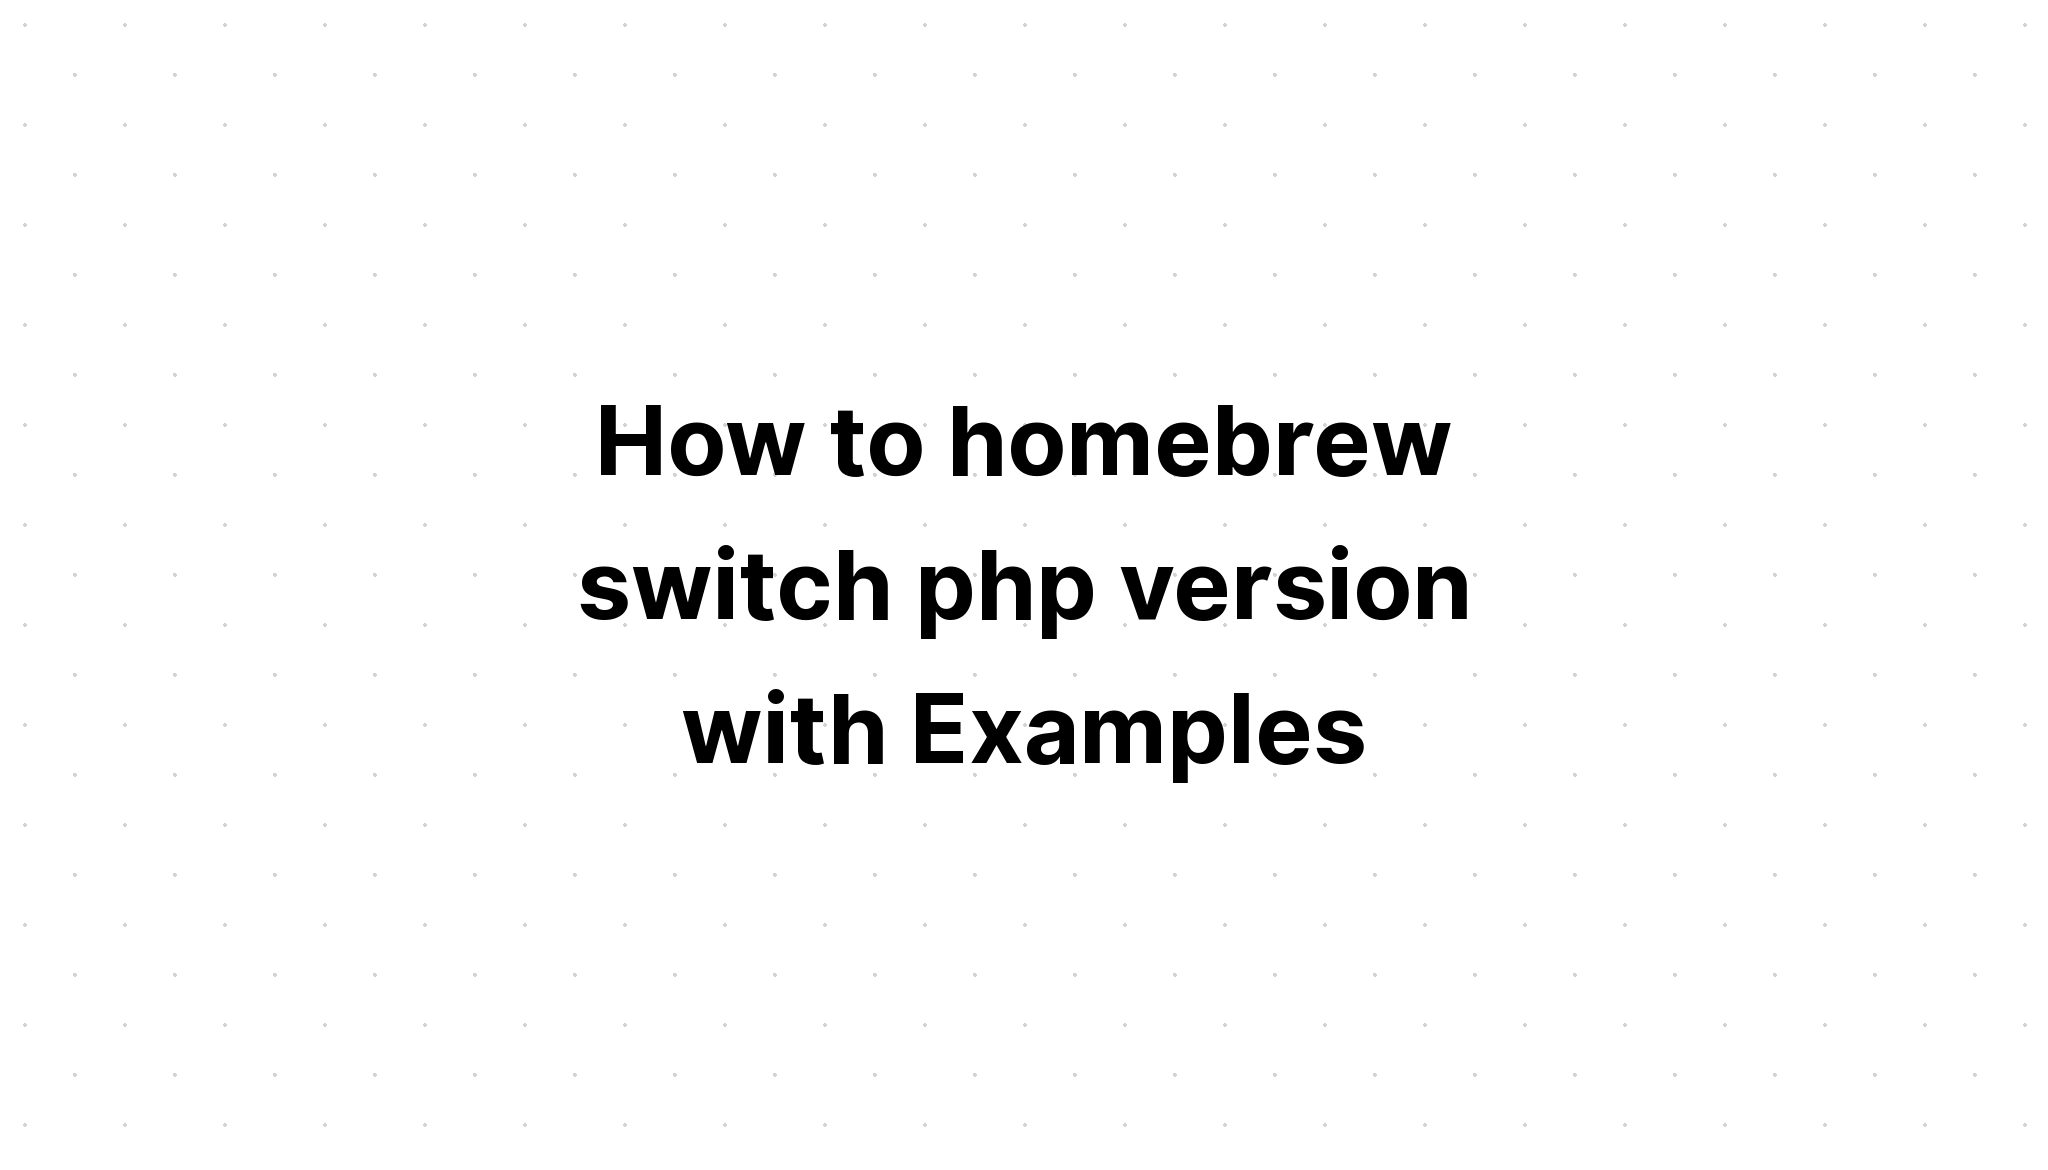 Cara homebrew mengganti versi php dengan Contoh